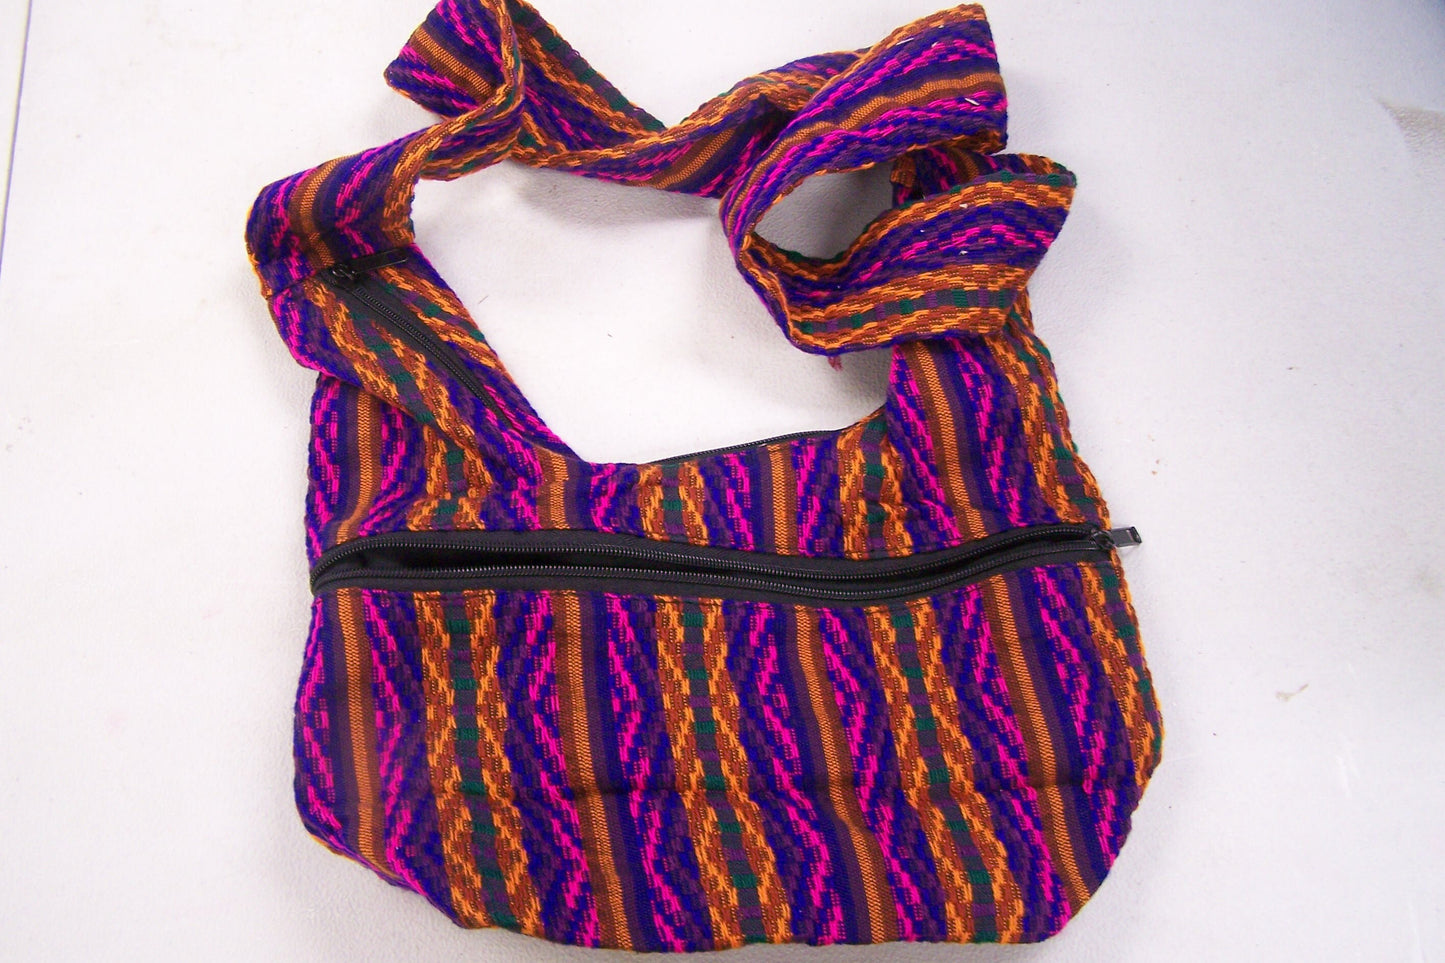 SALE! Cotton Guatemalan Shoulder Bag Purse, 2 Lined Zipper Pouches - Bright Purple